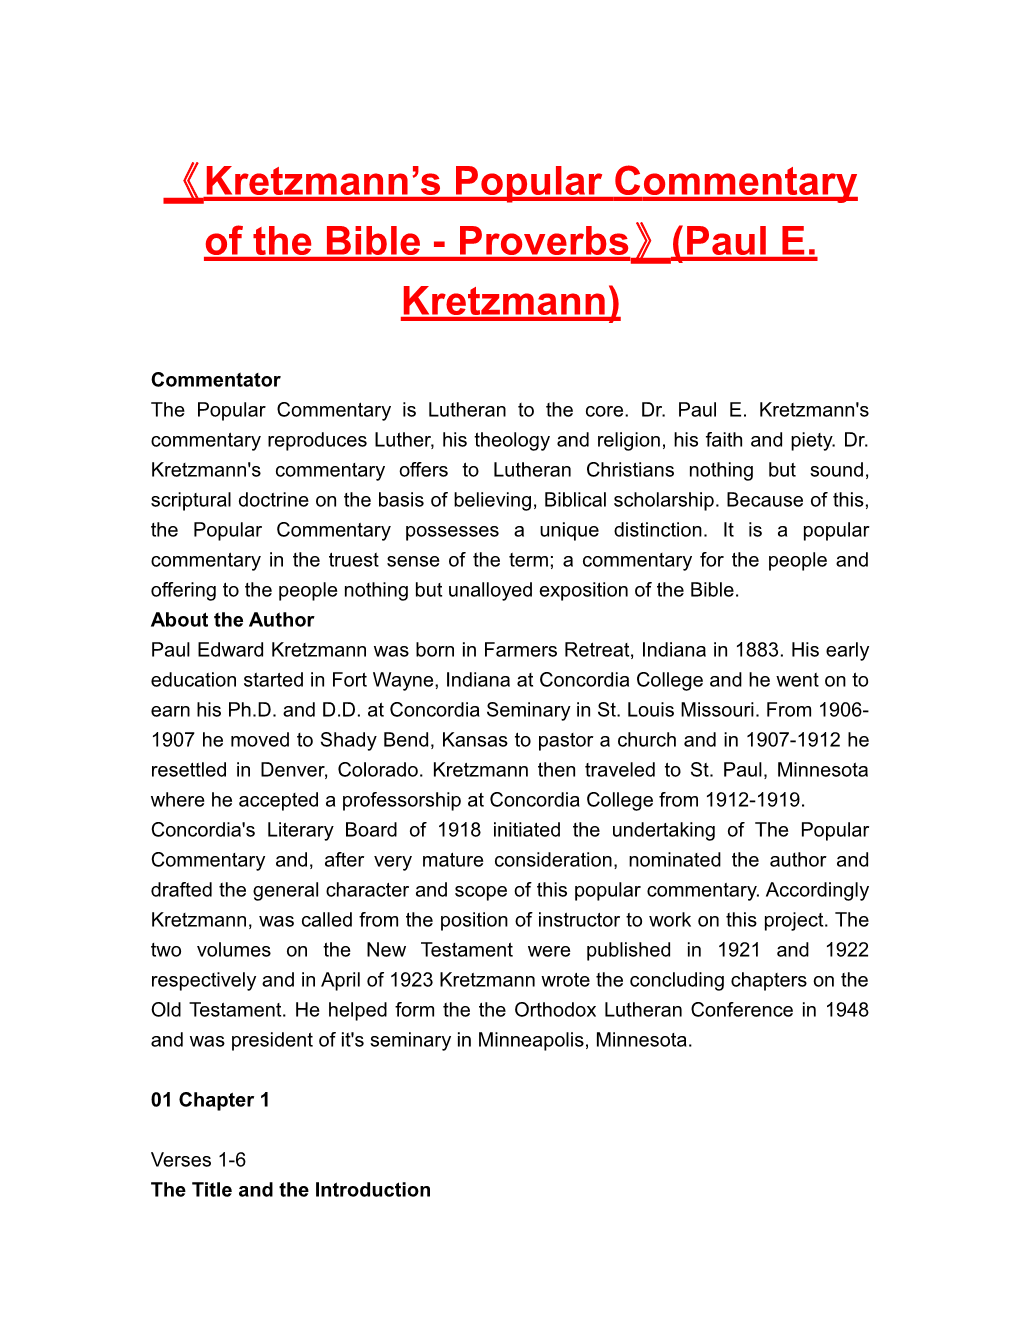 Kretzmann S Popularcommentary of the Bible-Proverbs (Paul E. Kretzmann)